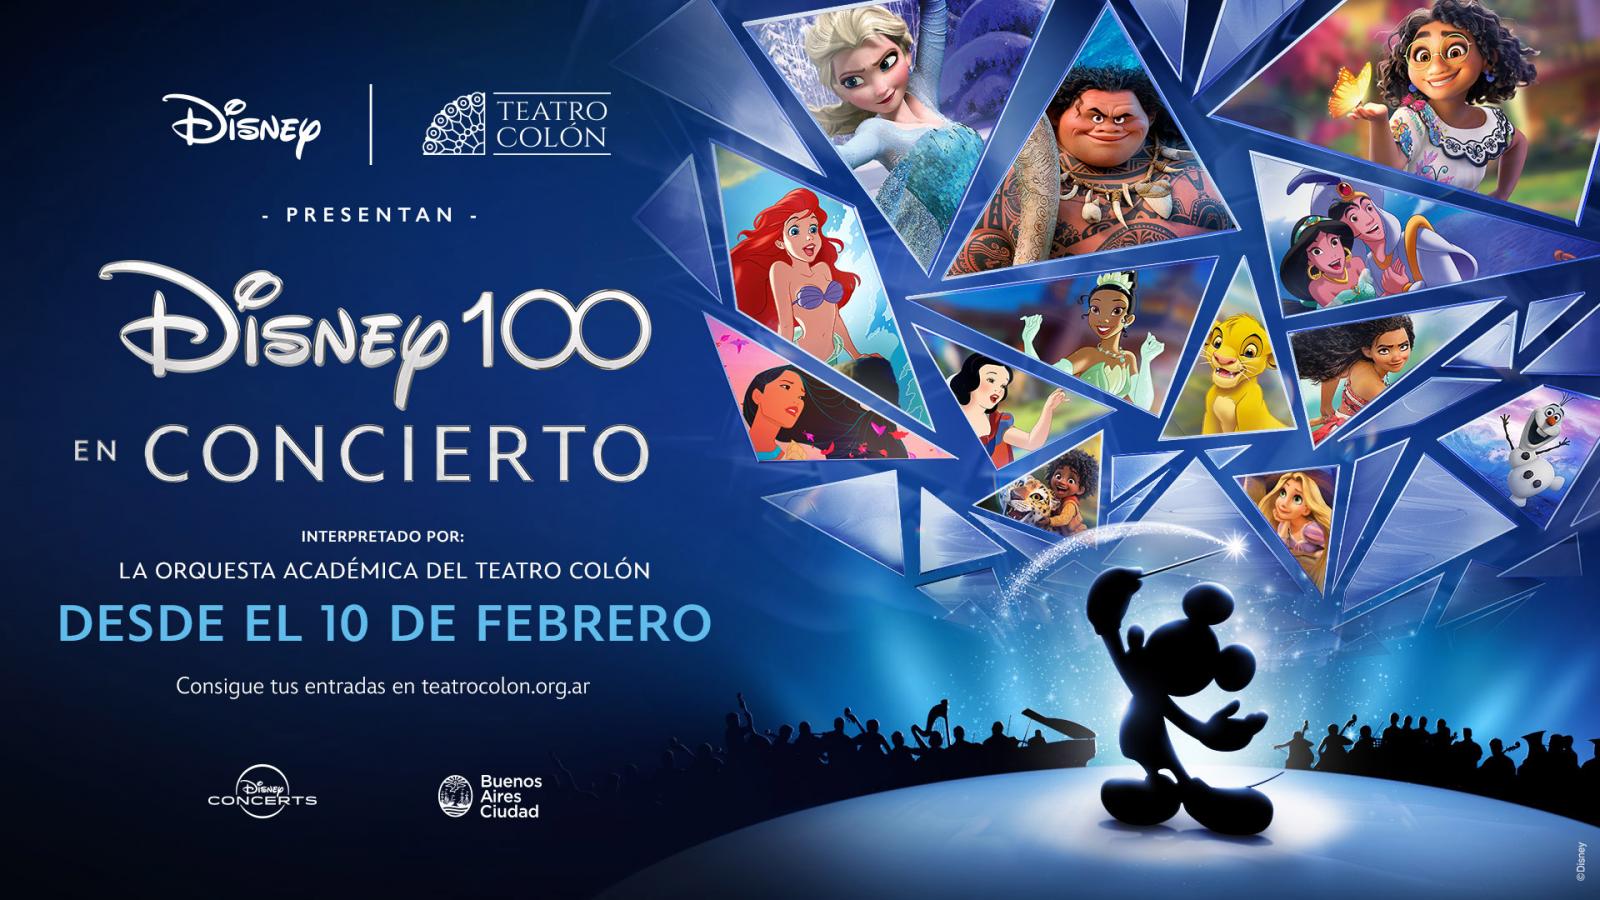 Disney 100 En Concierto en el Teatro Colón